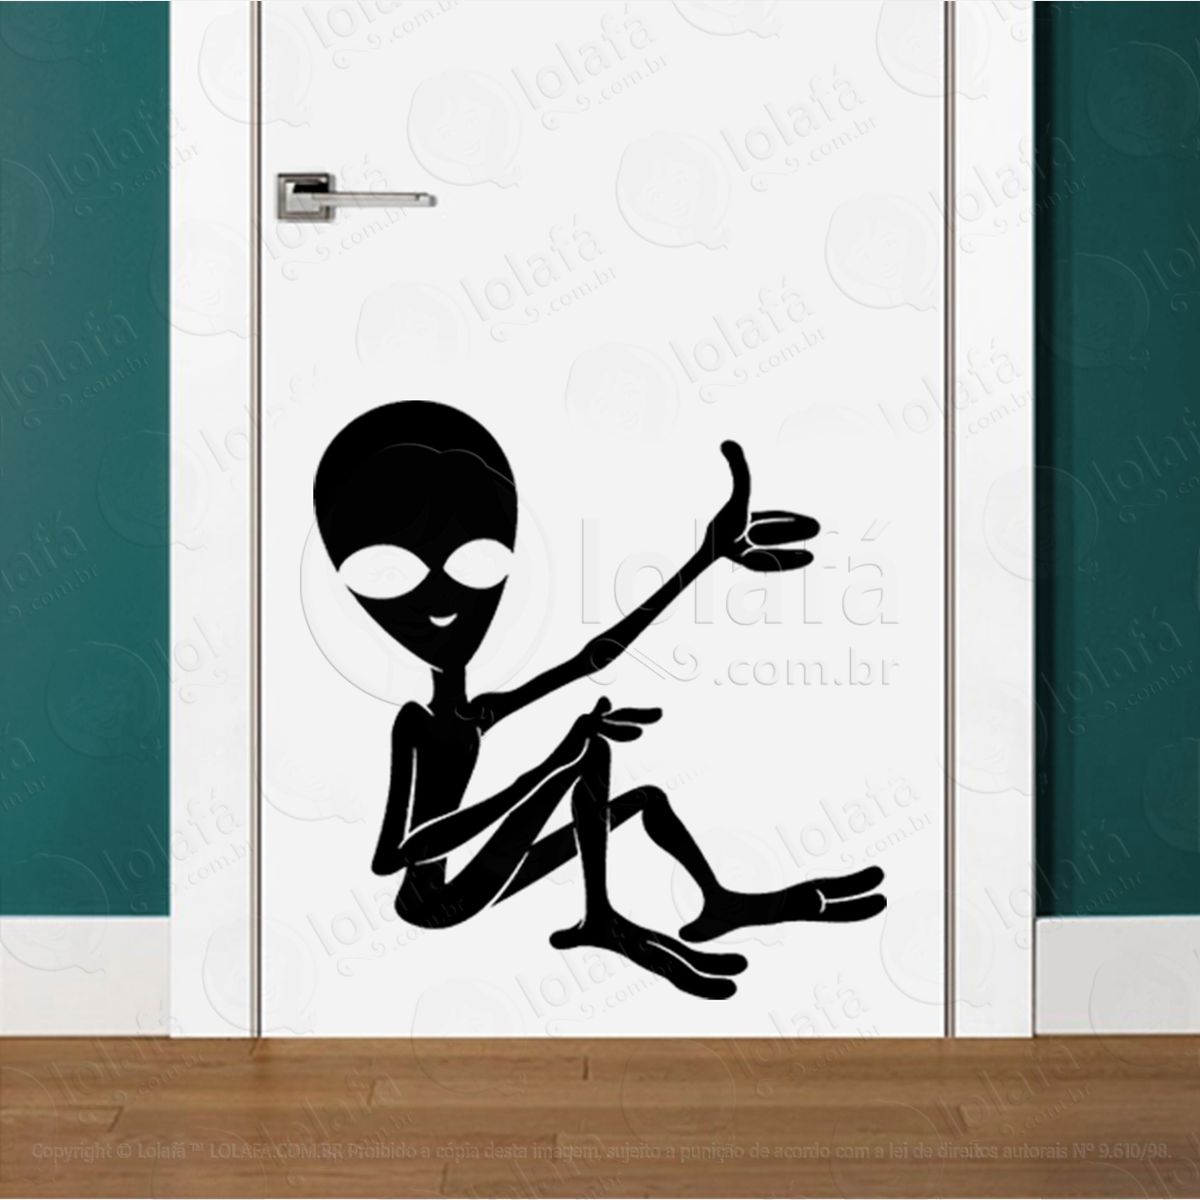 alien legal adesivo alienígena de parede para quarto, porta e vidro - mod:232